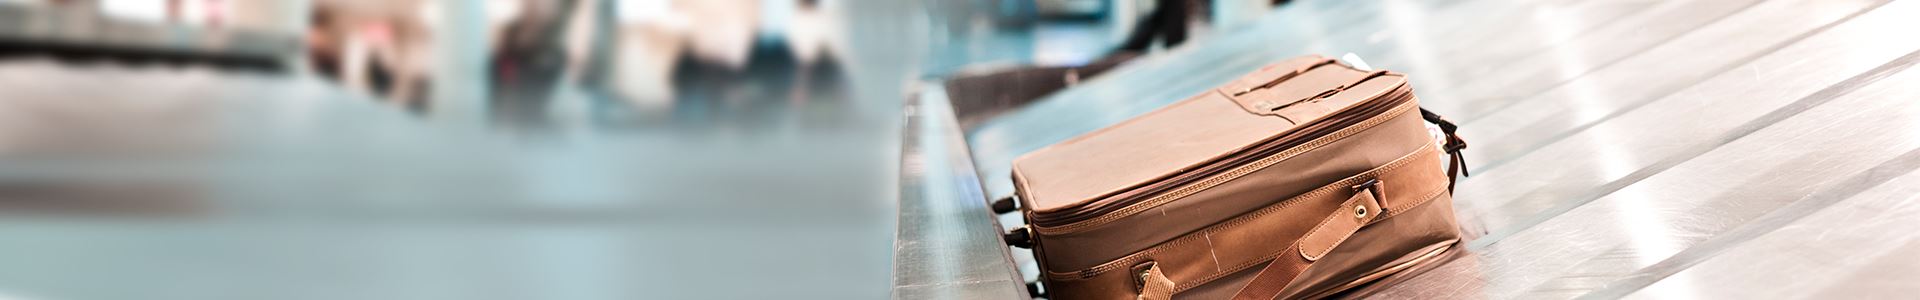 На изображении показан коричневый чемодан, лежащий на транспортерной ленте для багажа в аэропорту. Рядом с ним нет других чемоданов.